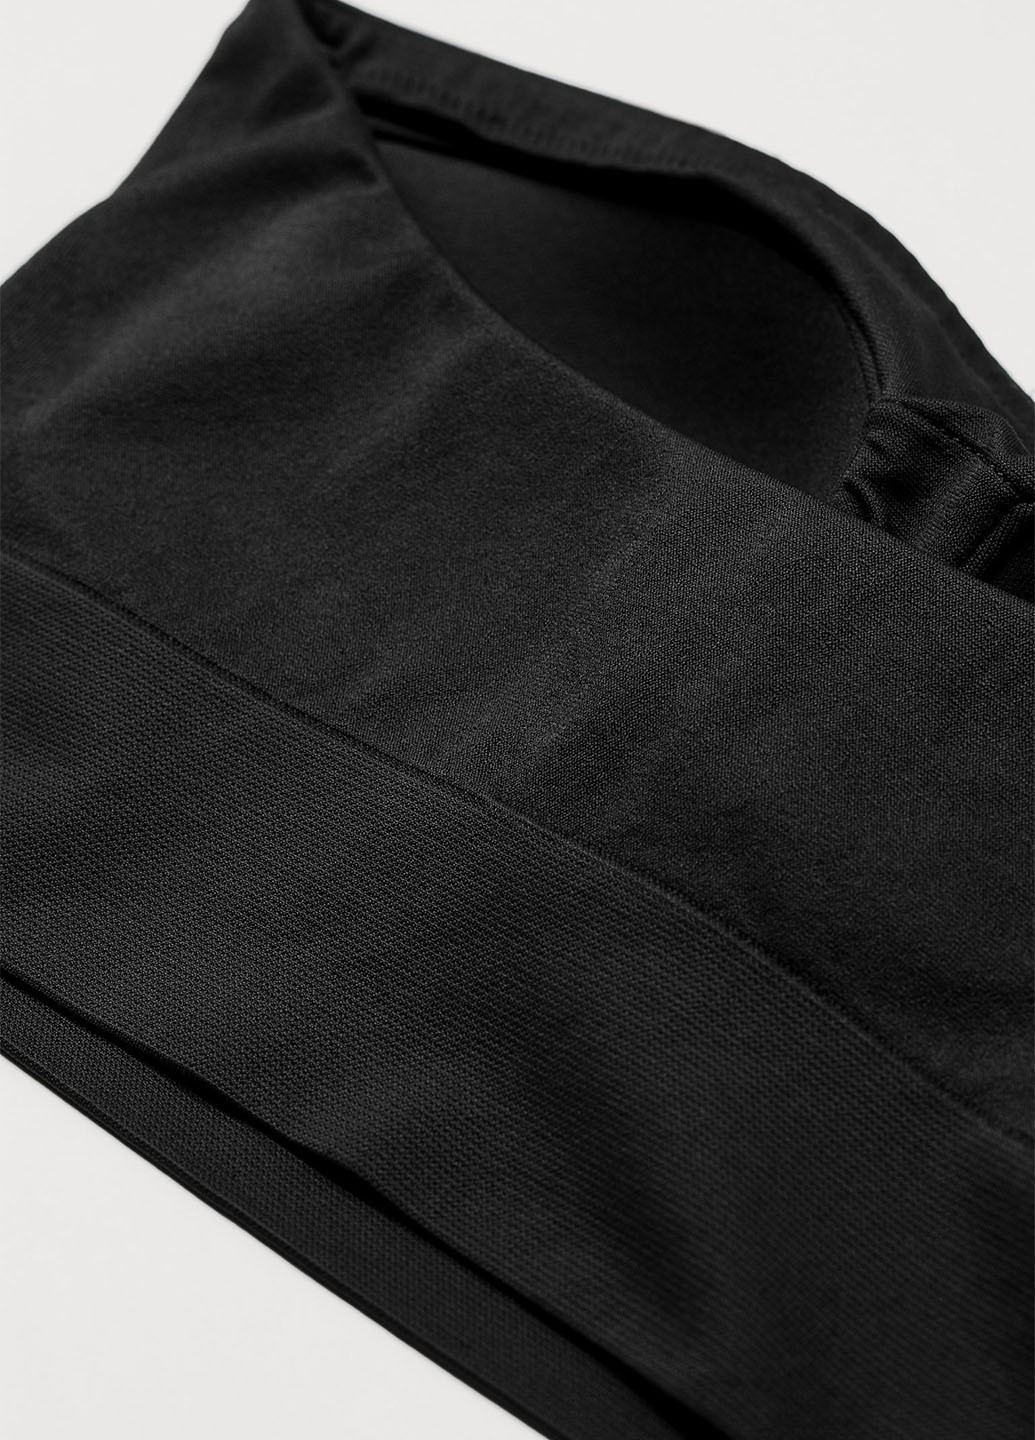 Чёрный топ бюстгальтер H&M без косточек полиамид